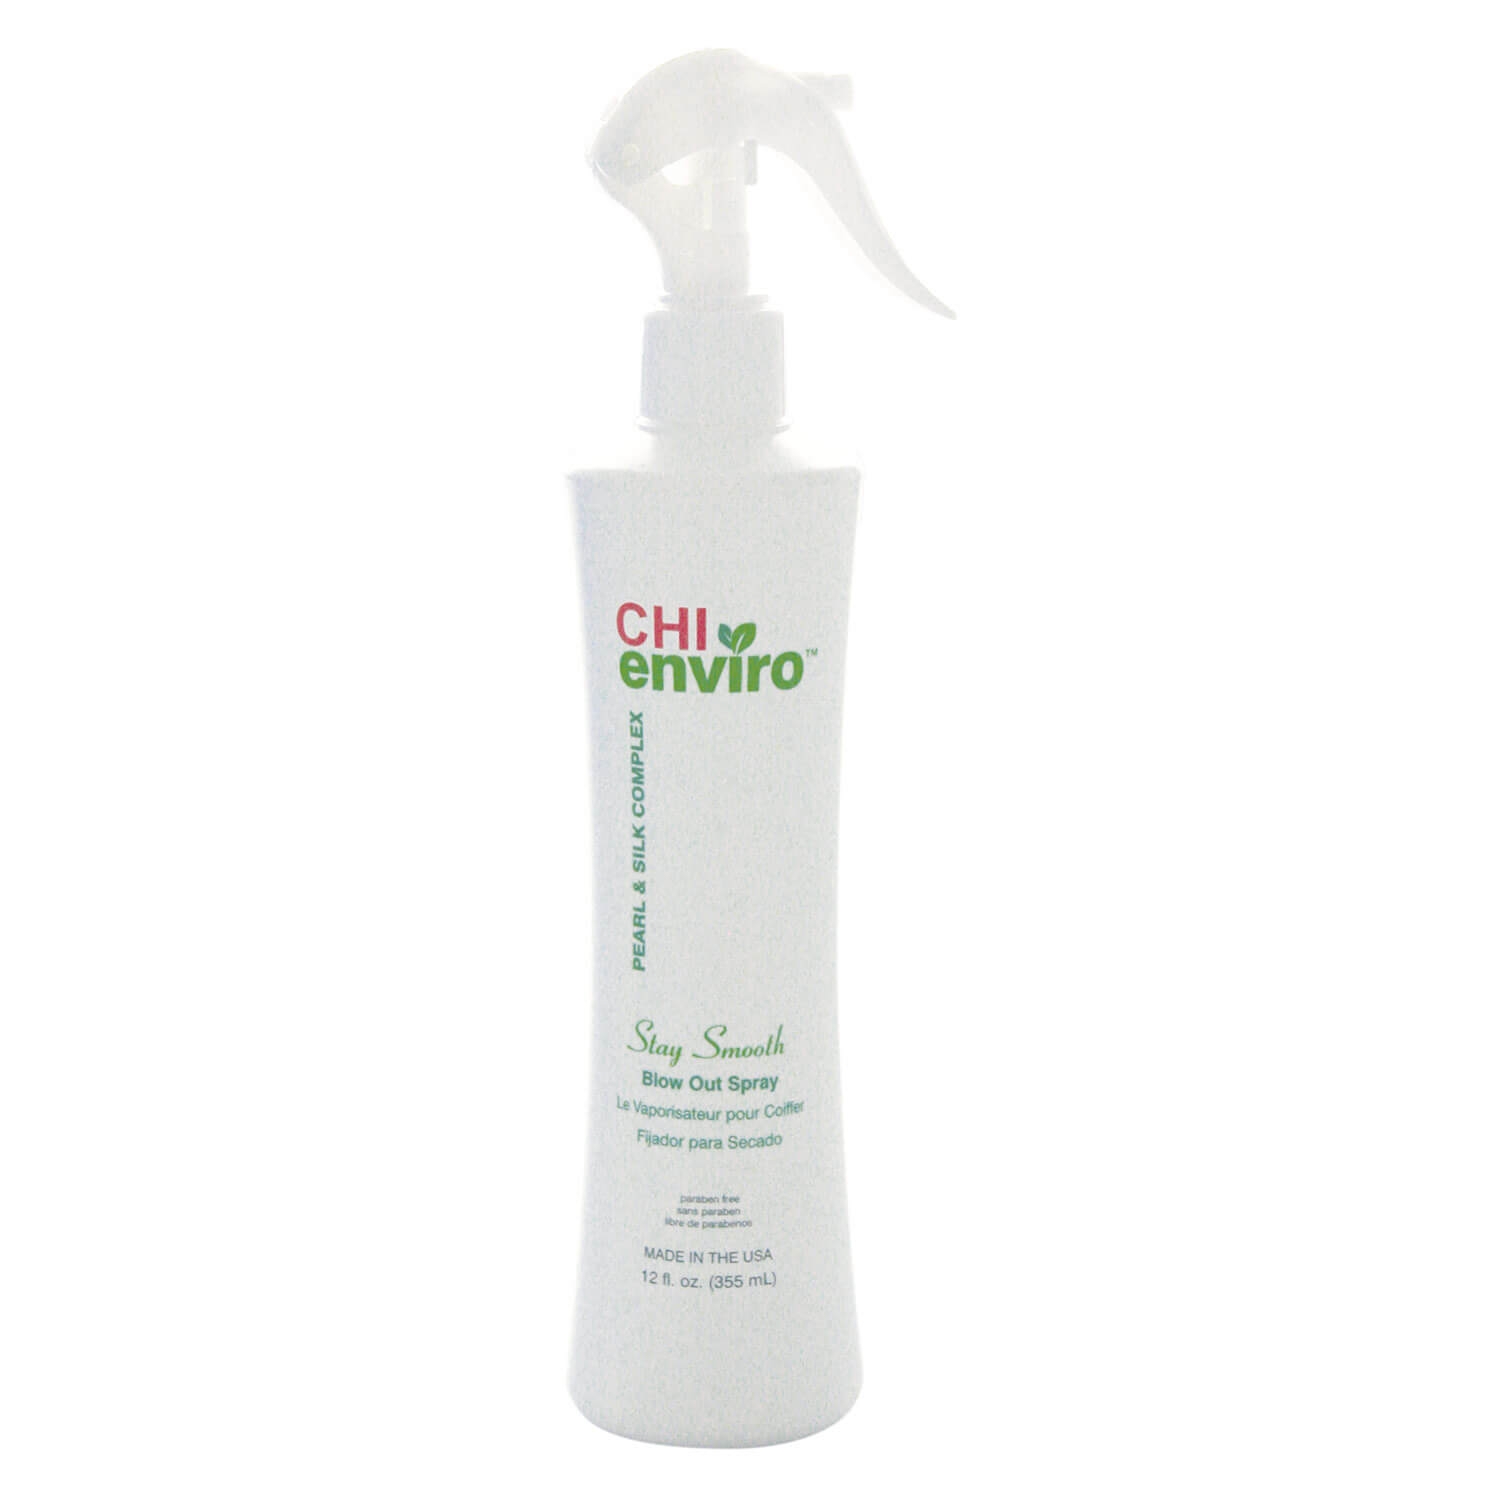 Produktbild von CHI enviro - Stay Smooth Blow Out Spray